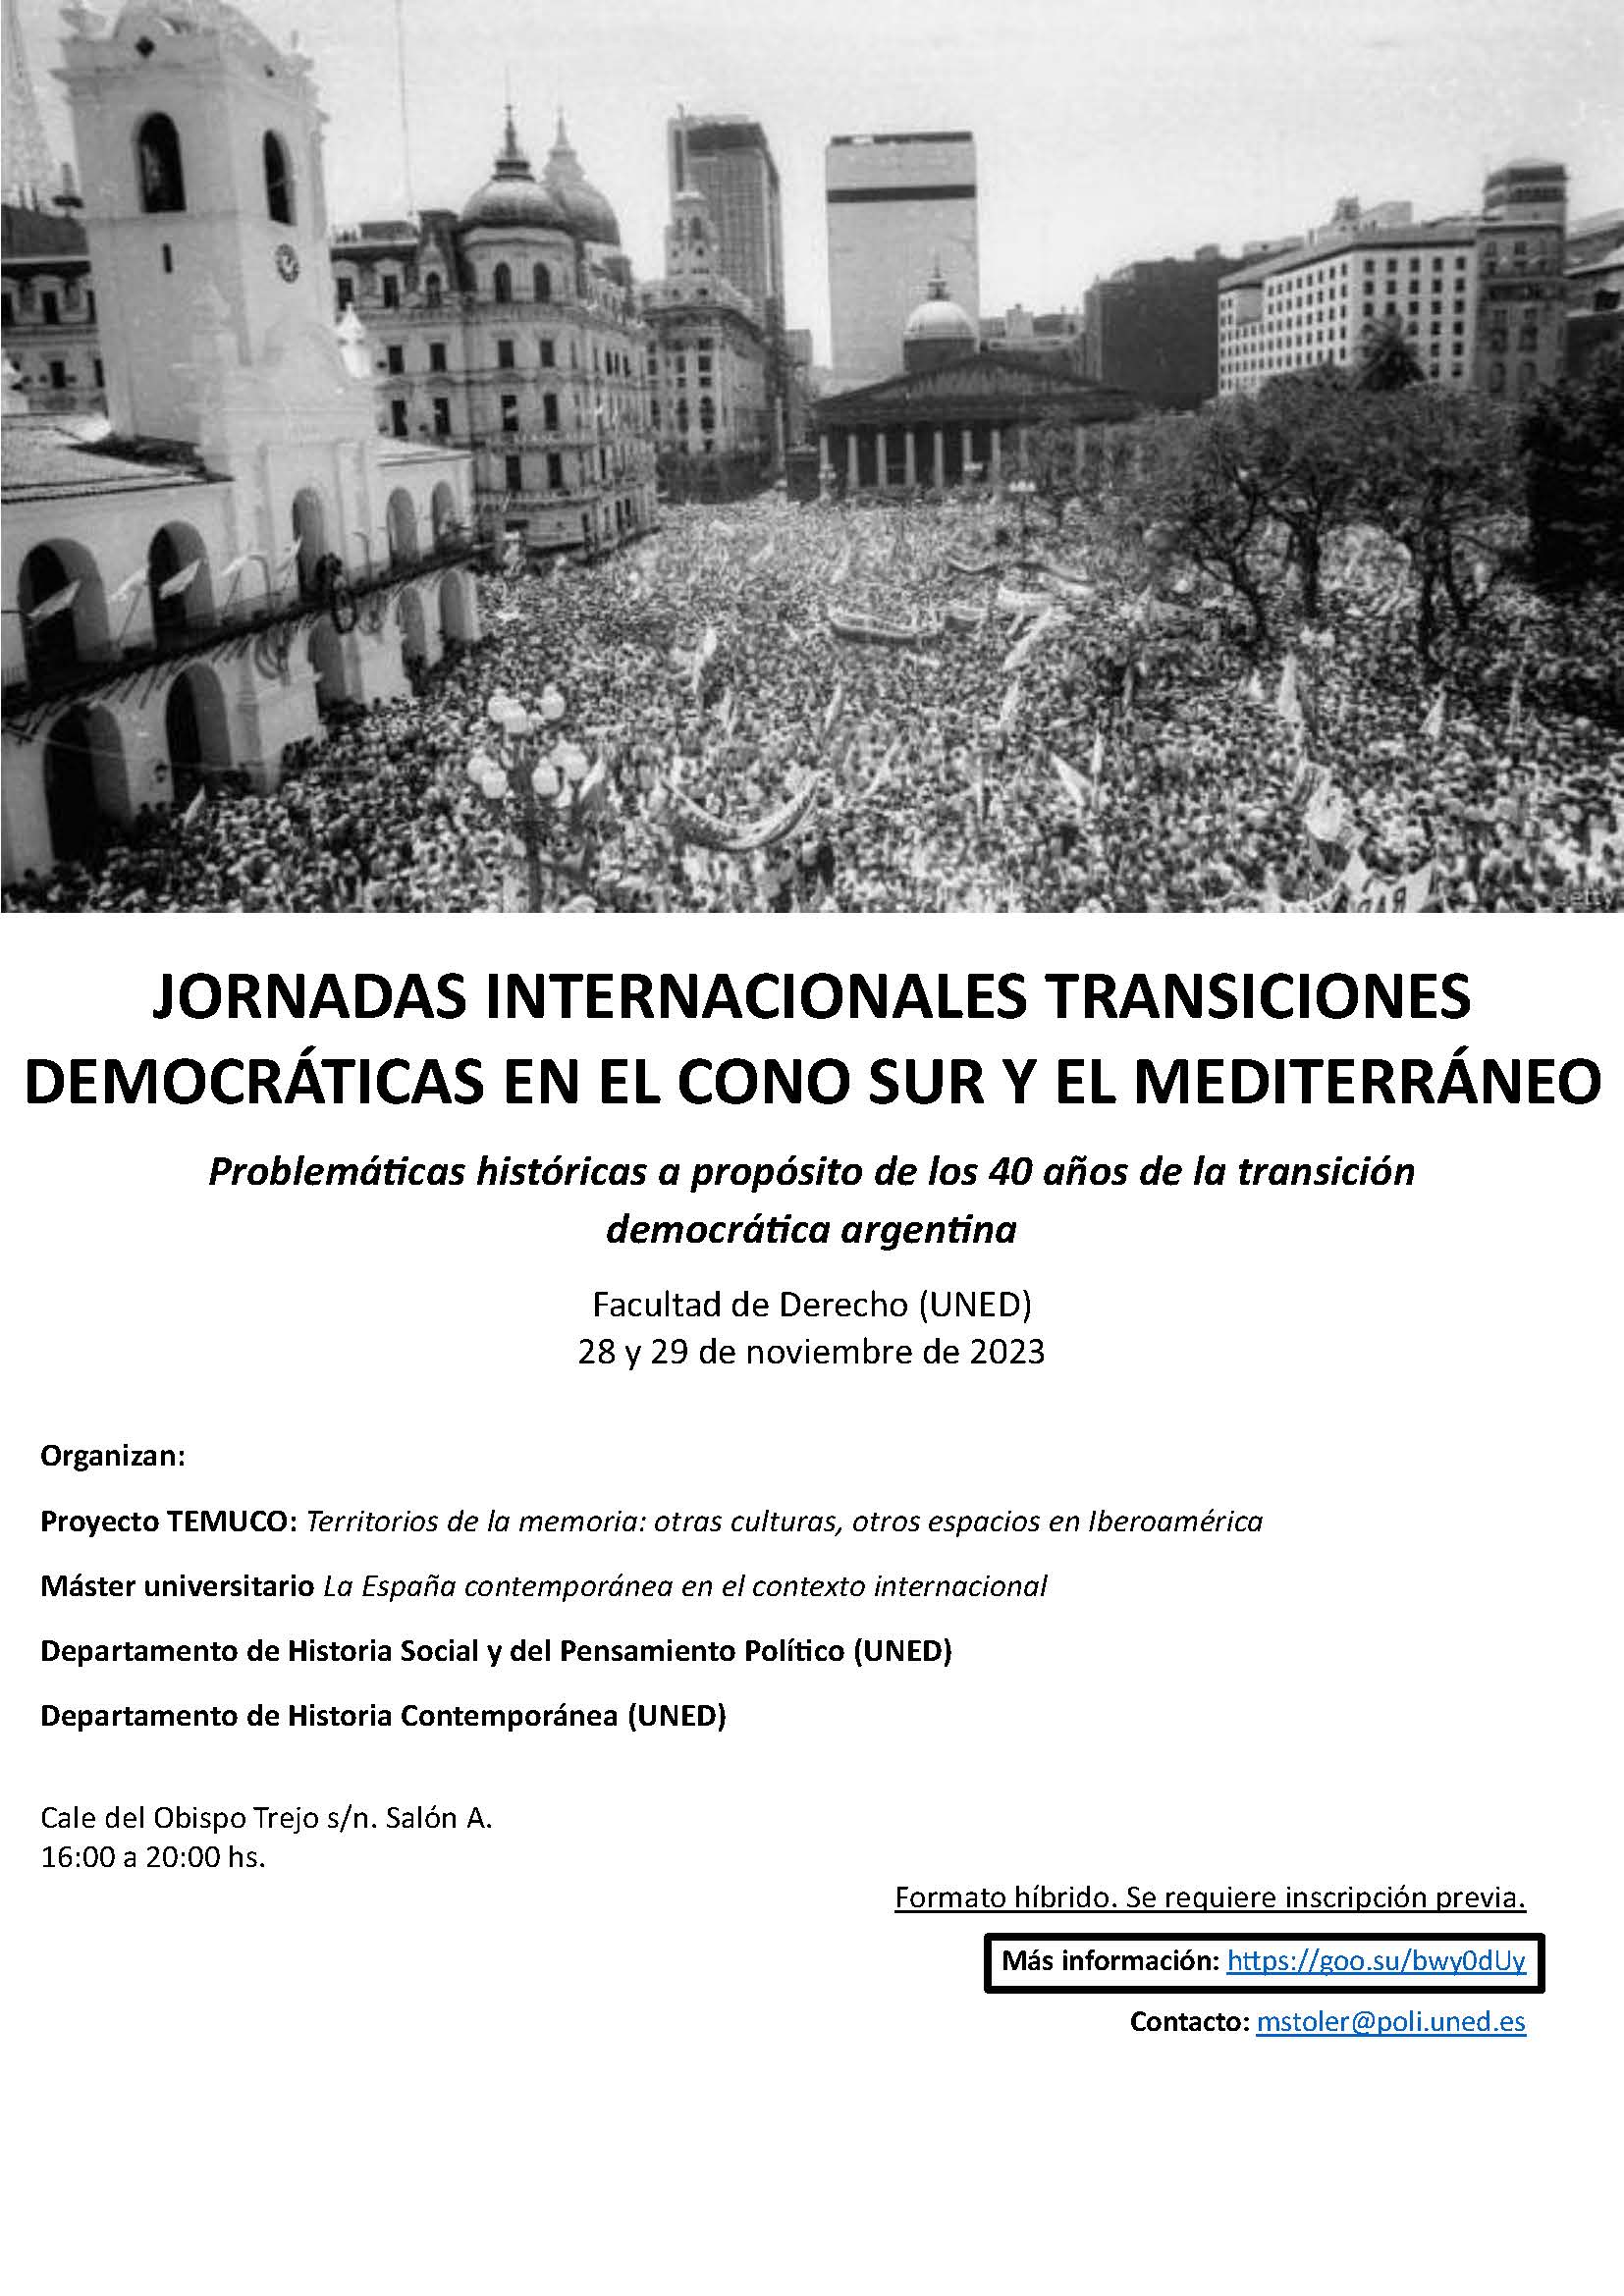 Jornadas Internacionales Transiciones Democráticas en el Cono Sur y el Mediterráneo